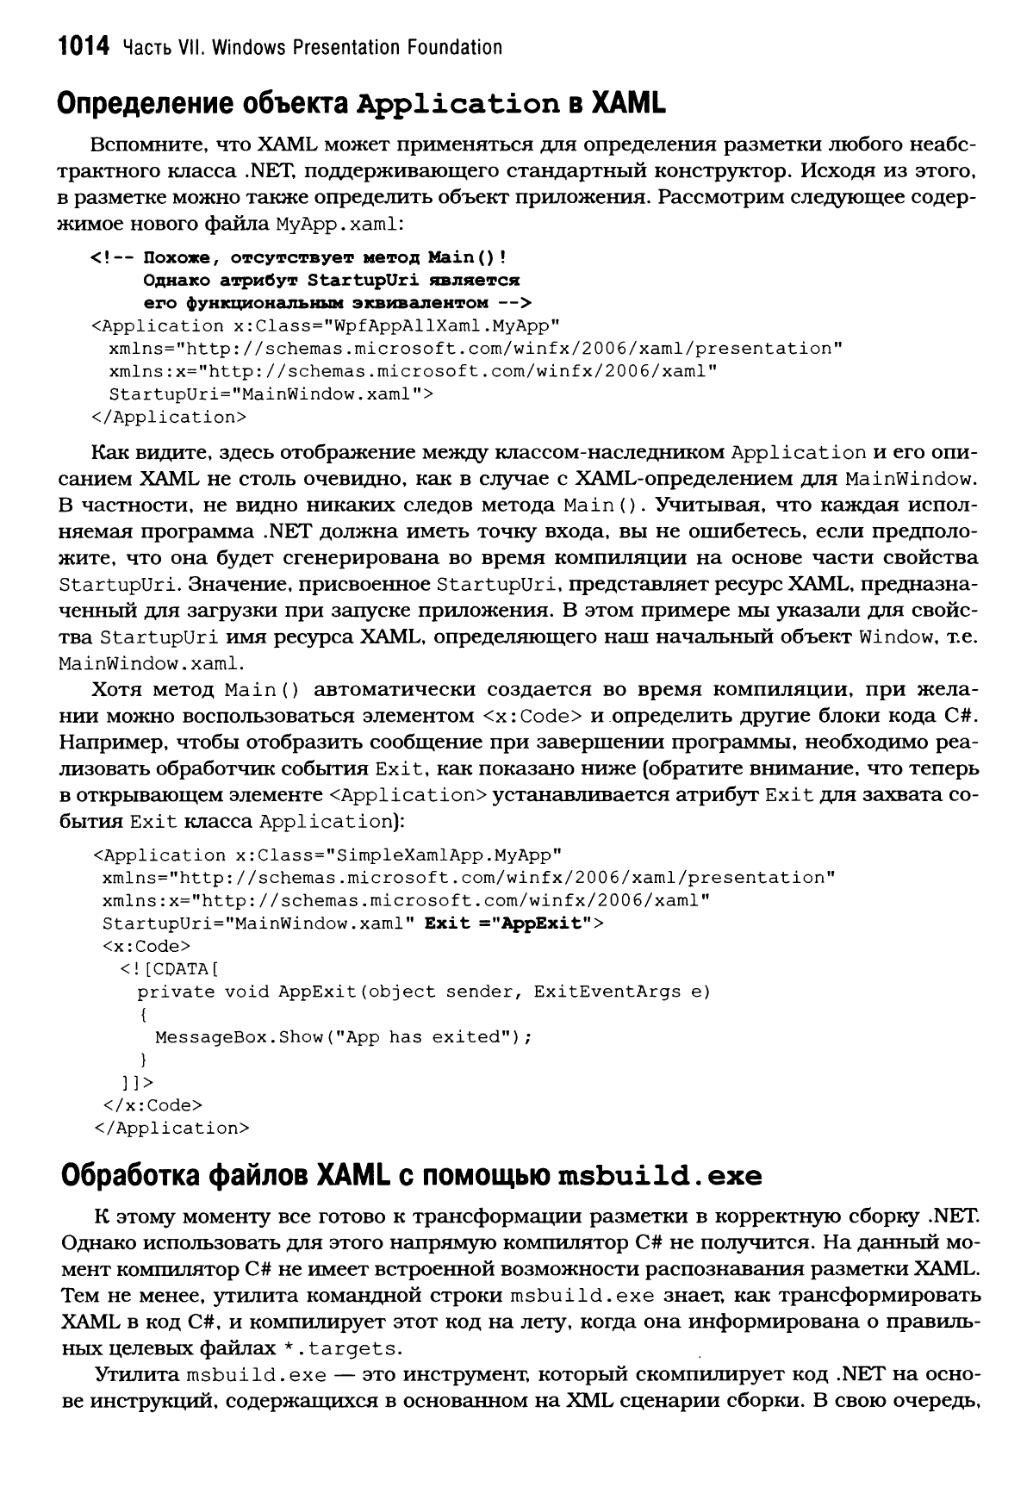 Определение oбъeктa Application в XAML
Обработка файлов XAML с помощью msbuild.exe